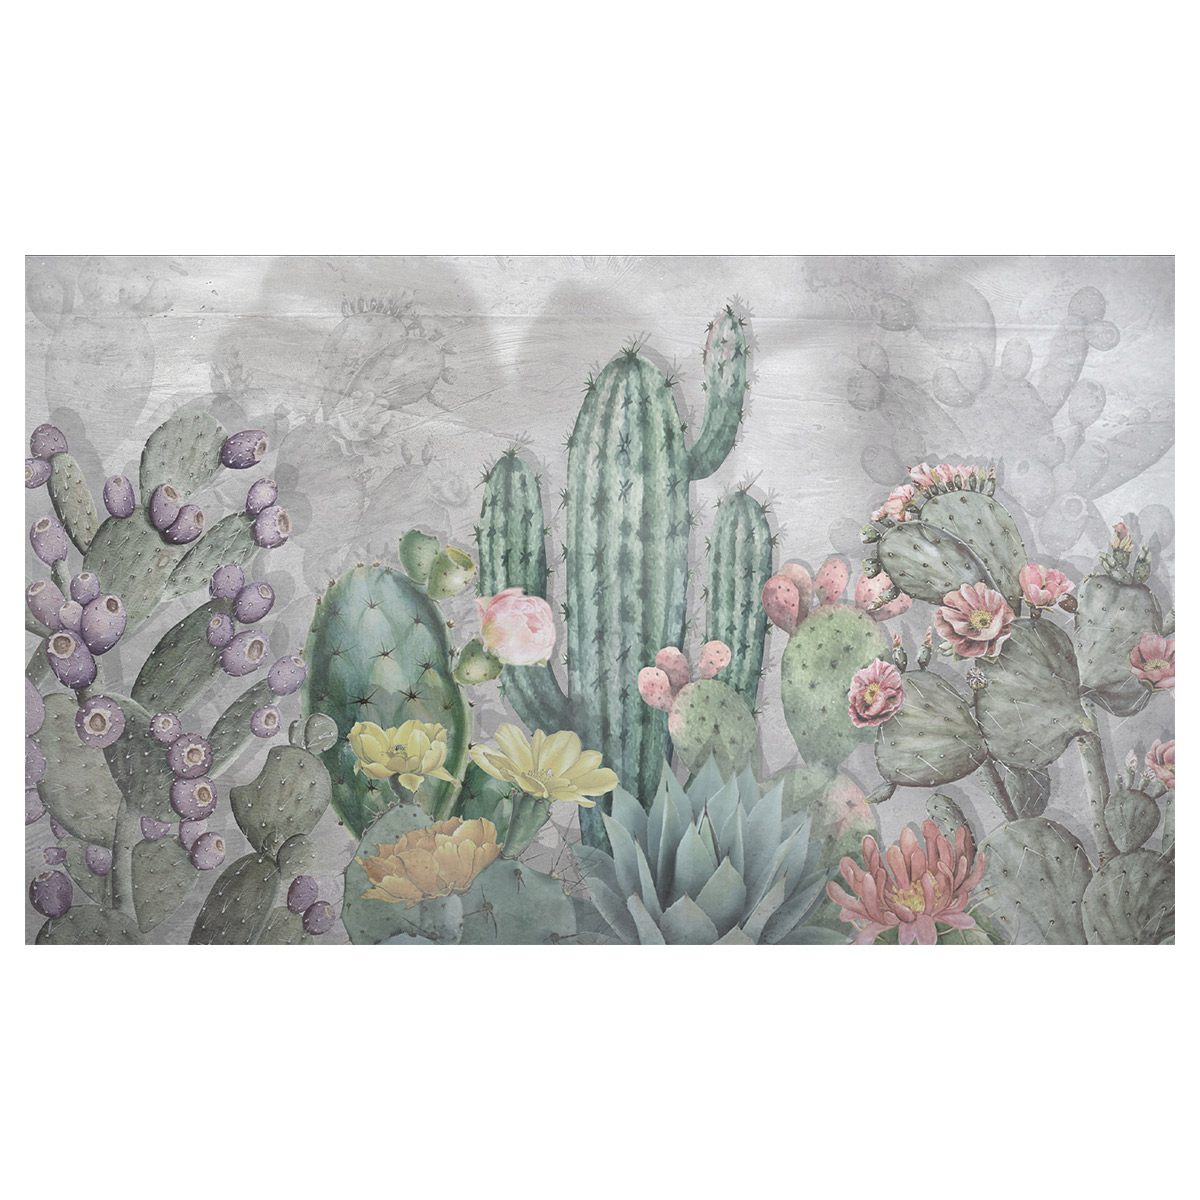 Rivestimento per pareti Cactus, carta vinilica TNT by Officinarkitettura